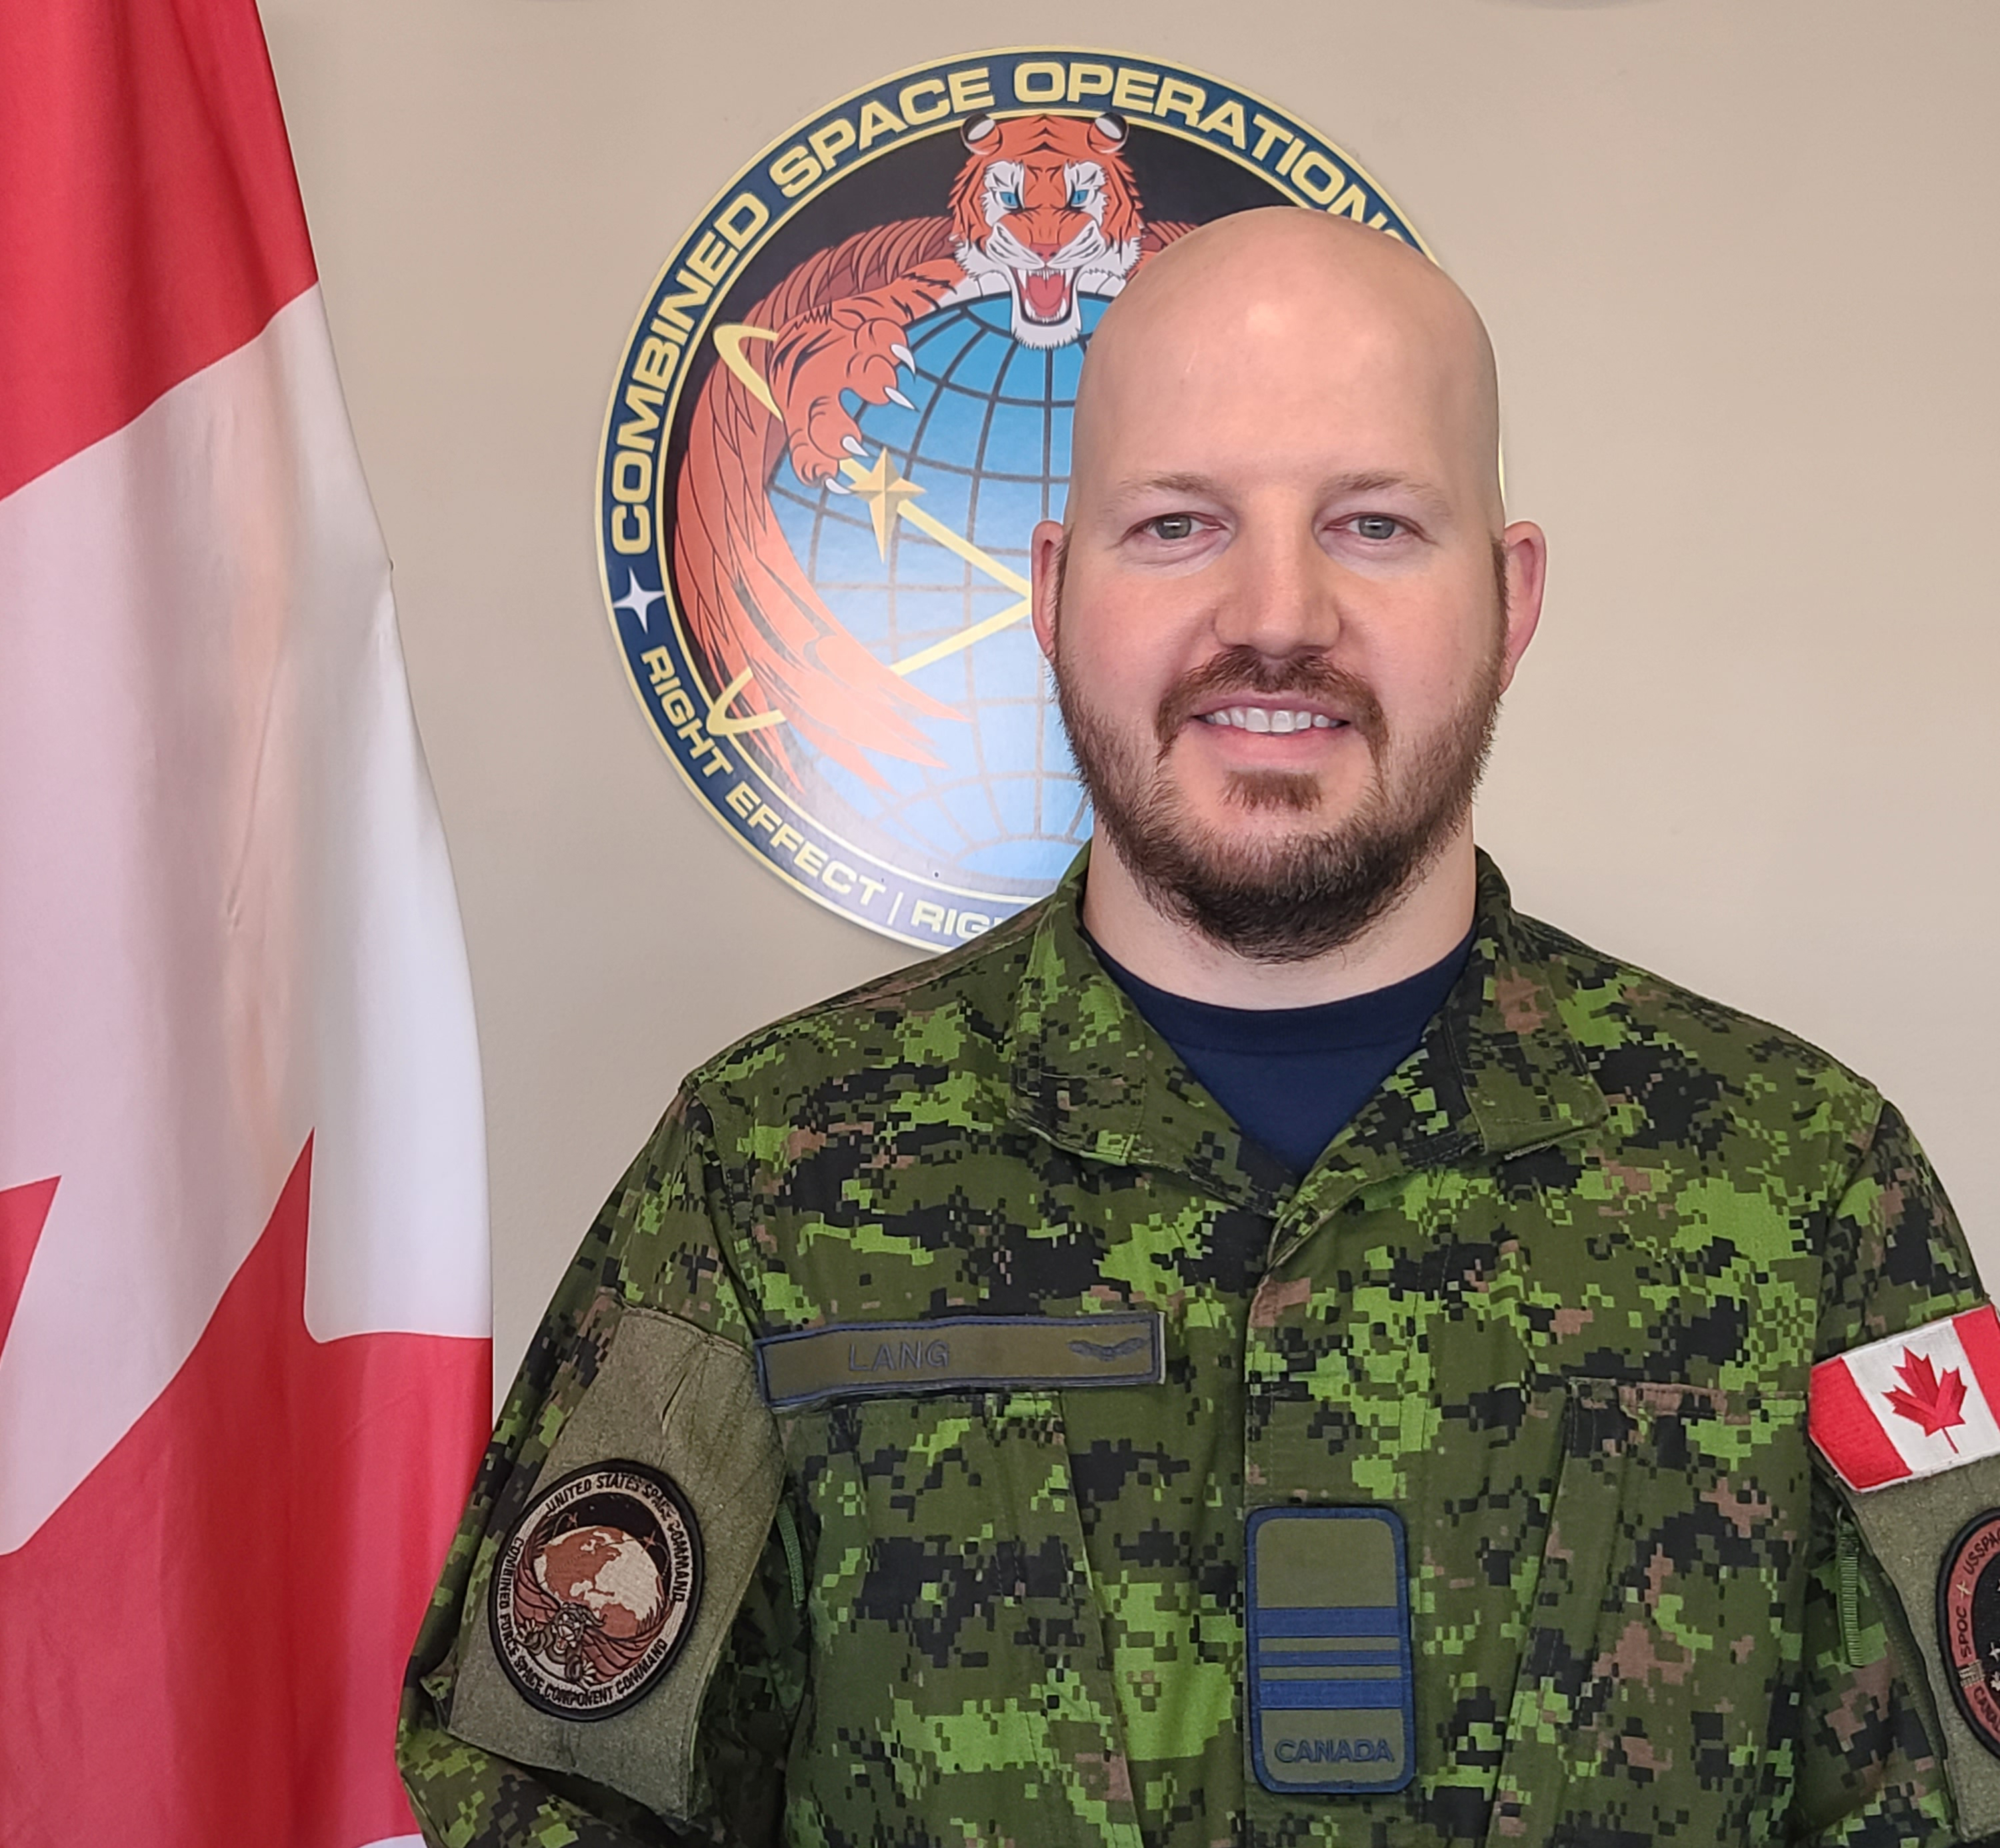 Un homme vêtu d’un uniforme militaire à camouflage se tient devant un drapeau du Canada et des insignes militaires.